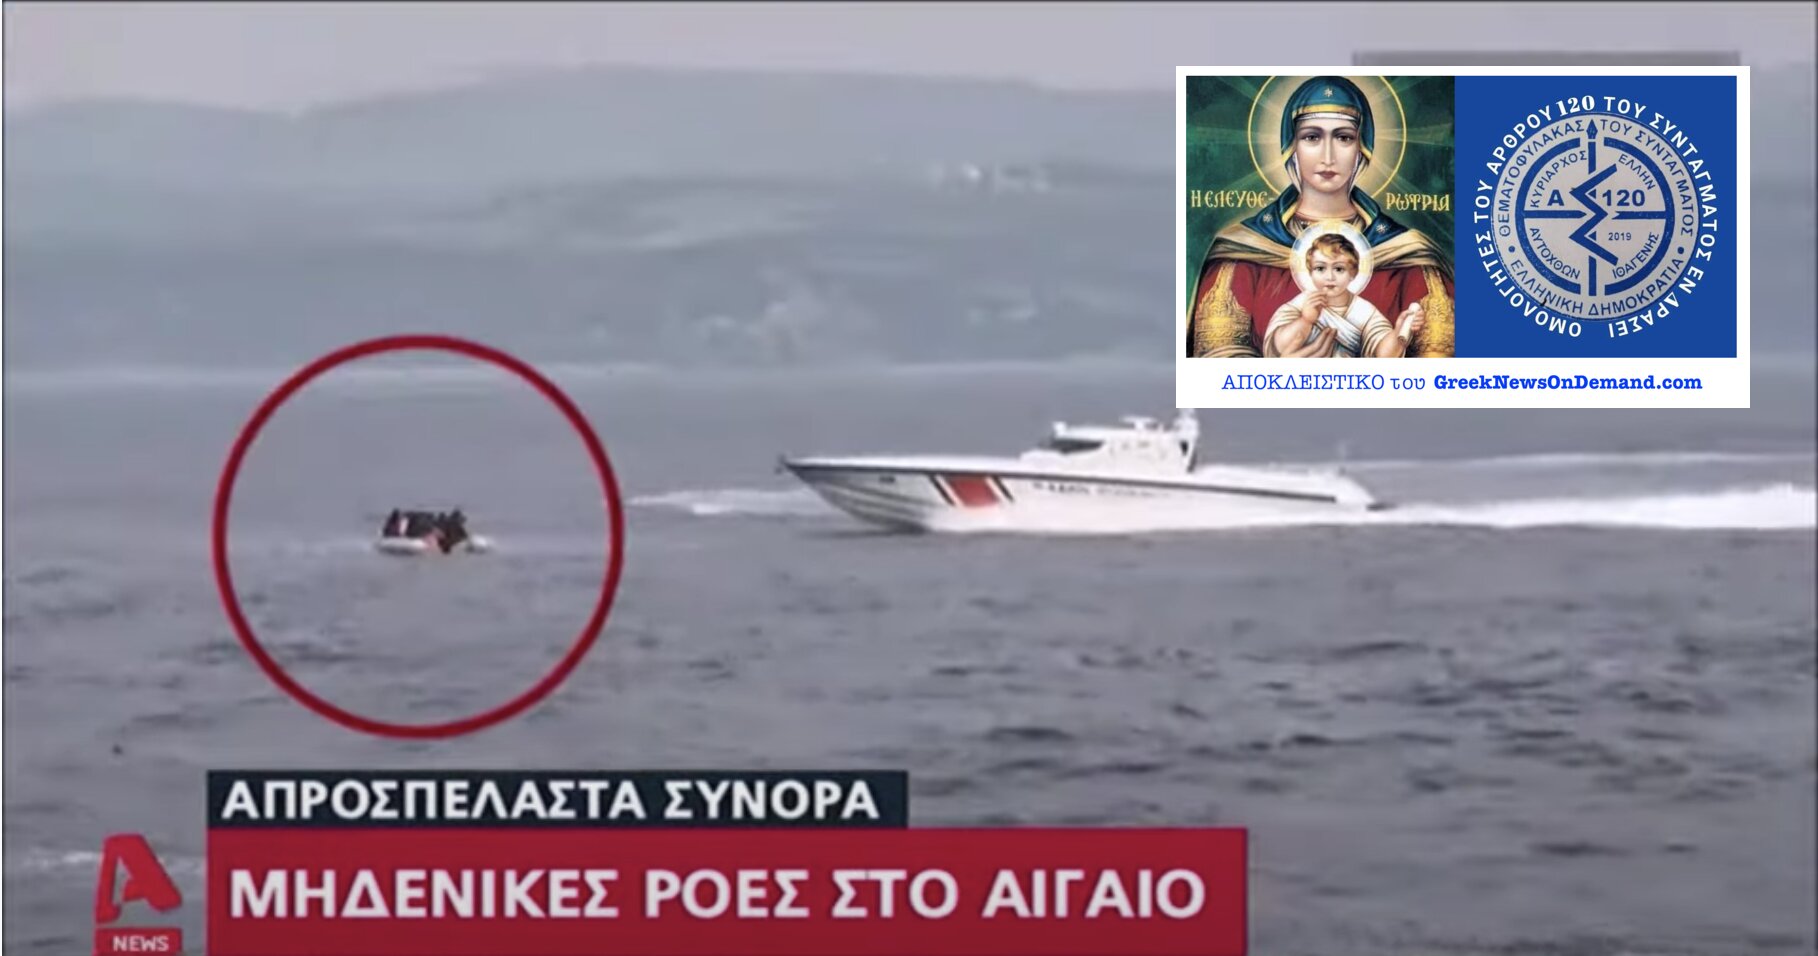 ΠΟΙΟΣ διέταξε “από ψηλά” το Ελληνικό Ναυτικό να σφραγίσει τα θαλάσσια σύνορα της χώρας, ο Μητσοτάκης ή ΚΑΠΟΙΟΣ ΑΛΛΟΣ;;;